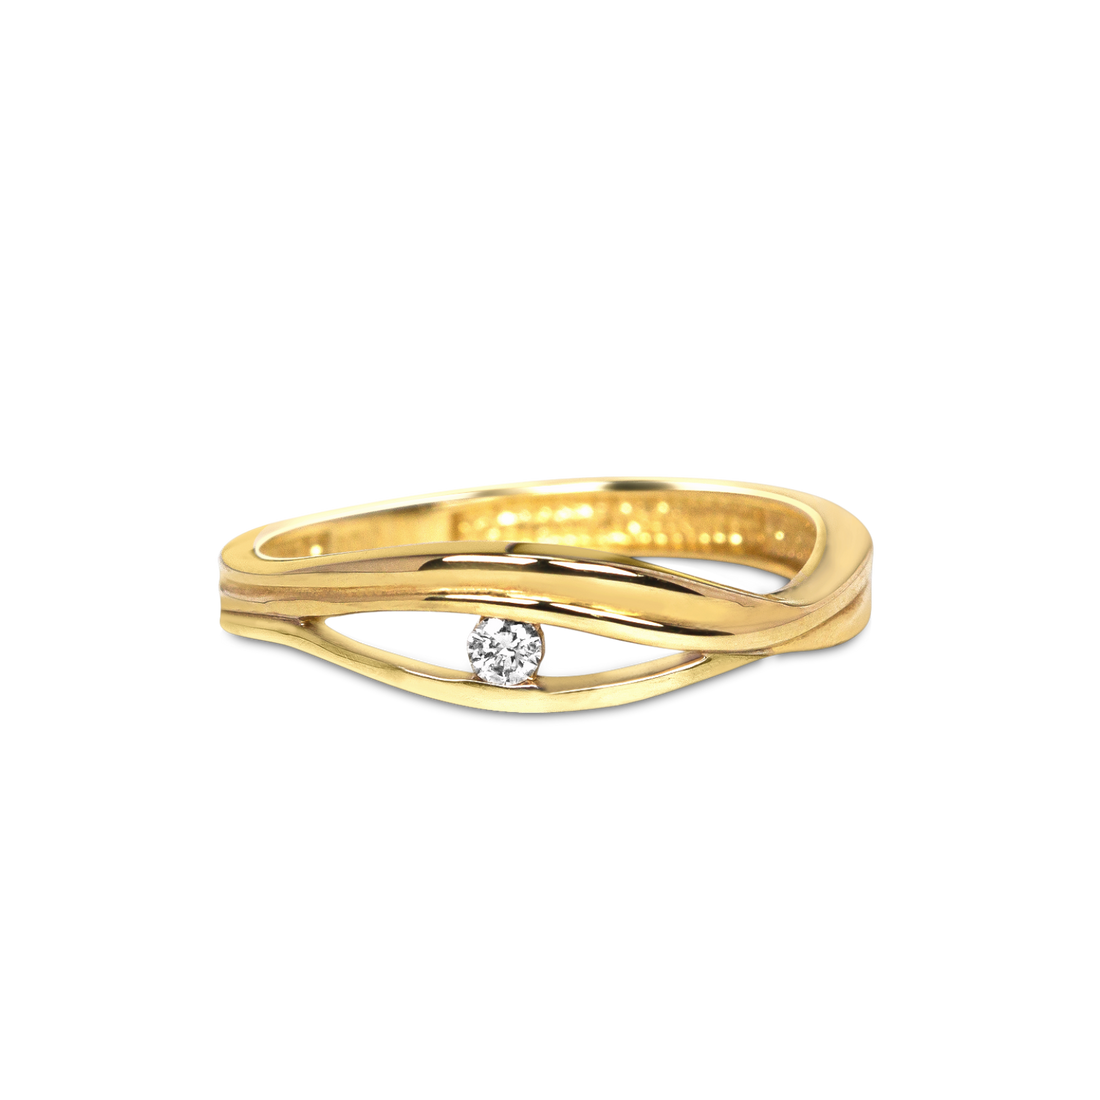 evil eye diamond ring, gold evil eye ring canada, diamond gold evil eye ring canada dainty